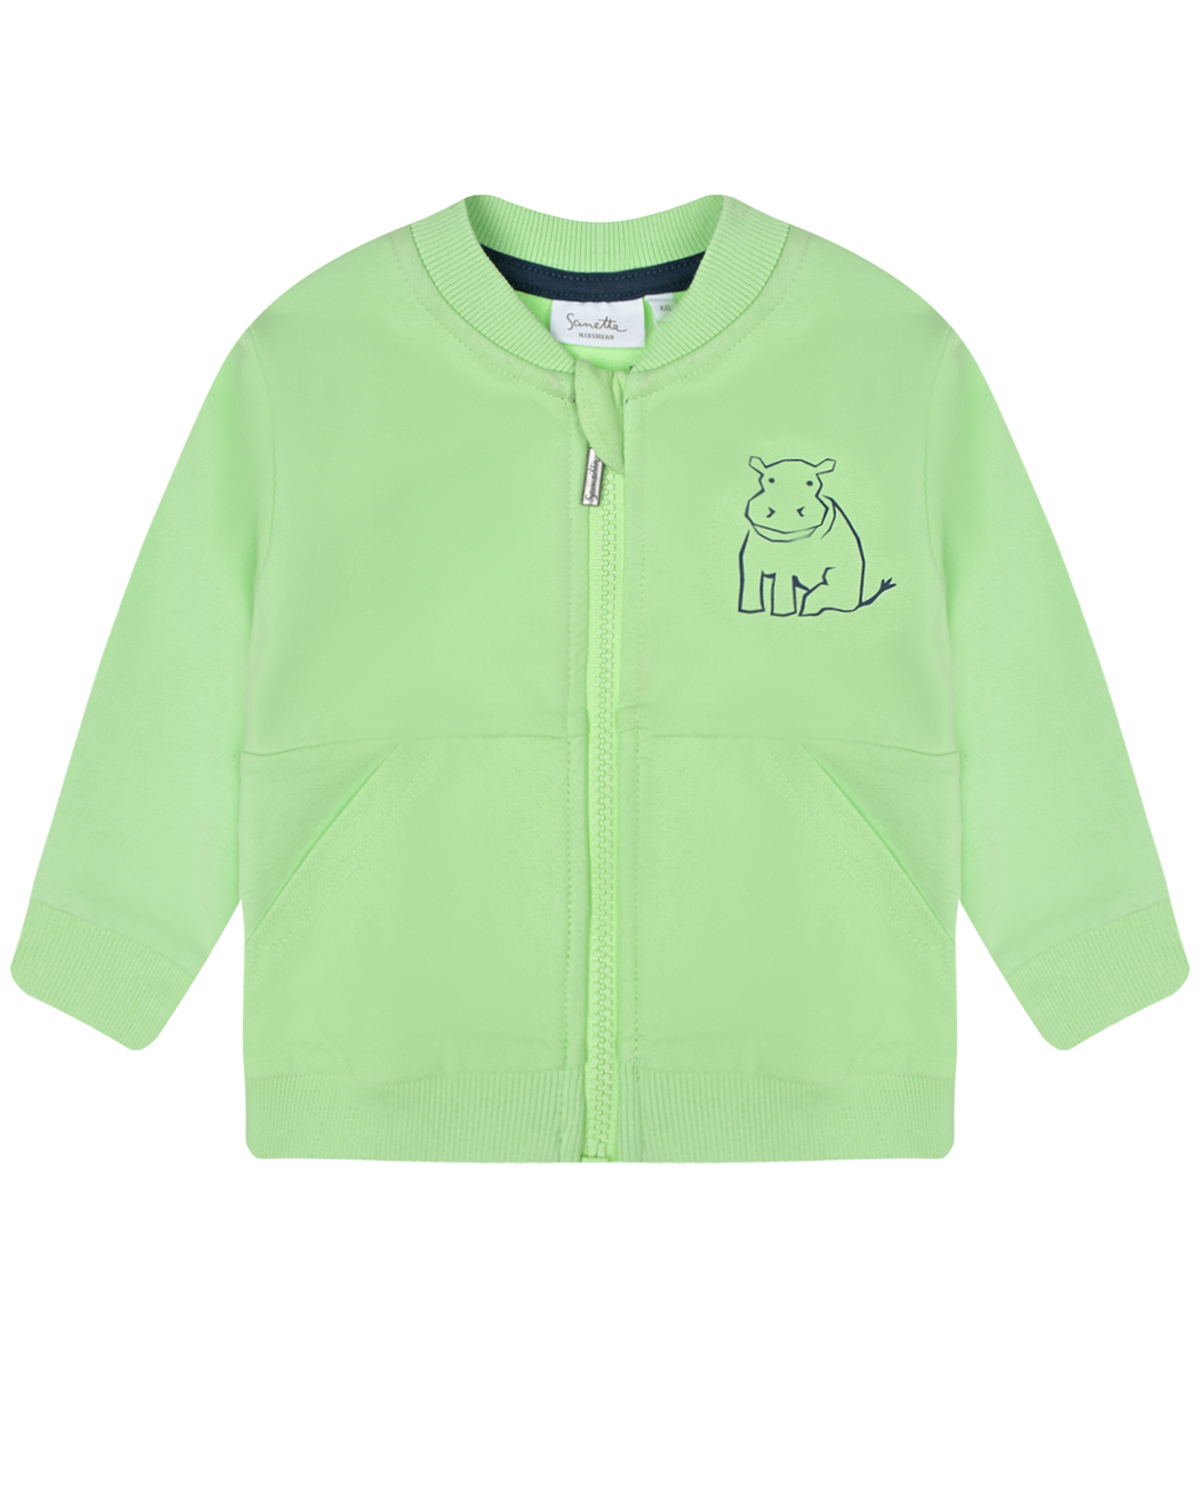 Зеленая спортивная куртка с принтом "бегемот" Sanetta Kidswear, размер 80, цвет зеленый - фото 1